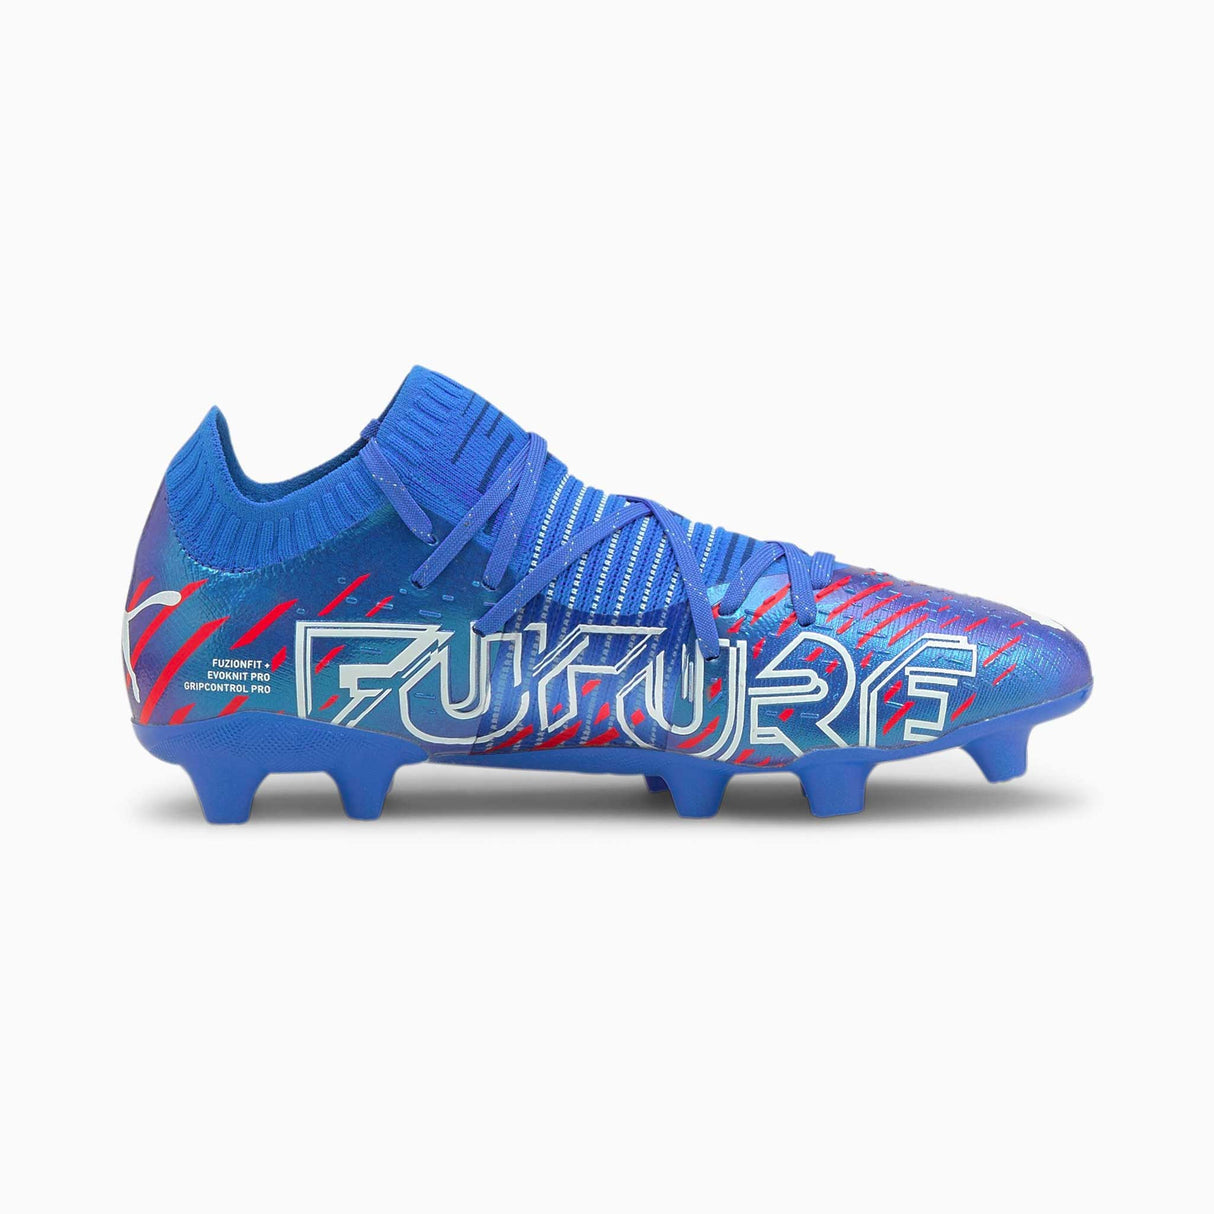 Puma Future Z 1.2 FG chaussures de soccer à crampons - Bluemazing / Sunblaze / Surf the web - Côté